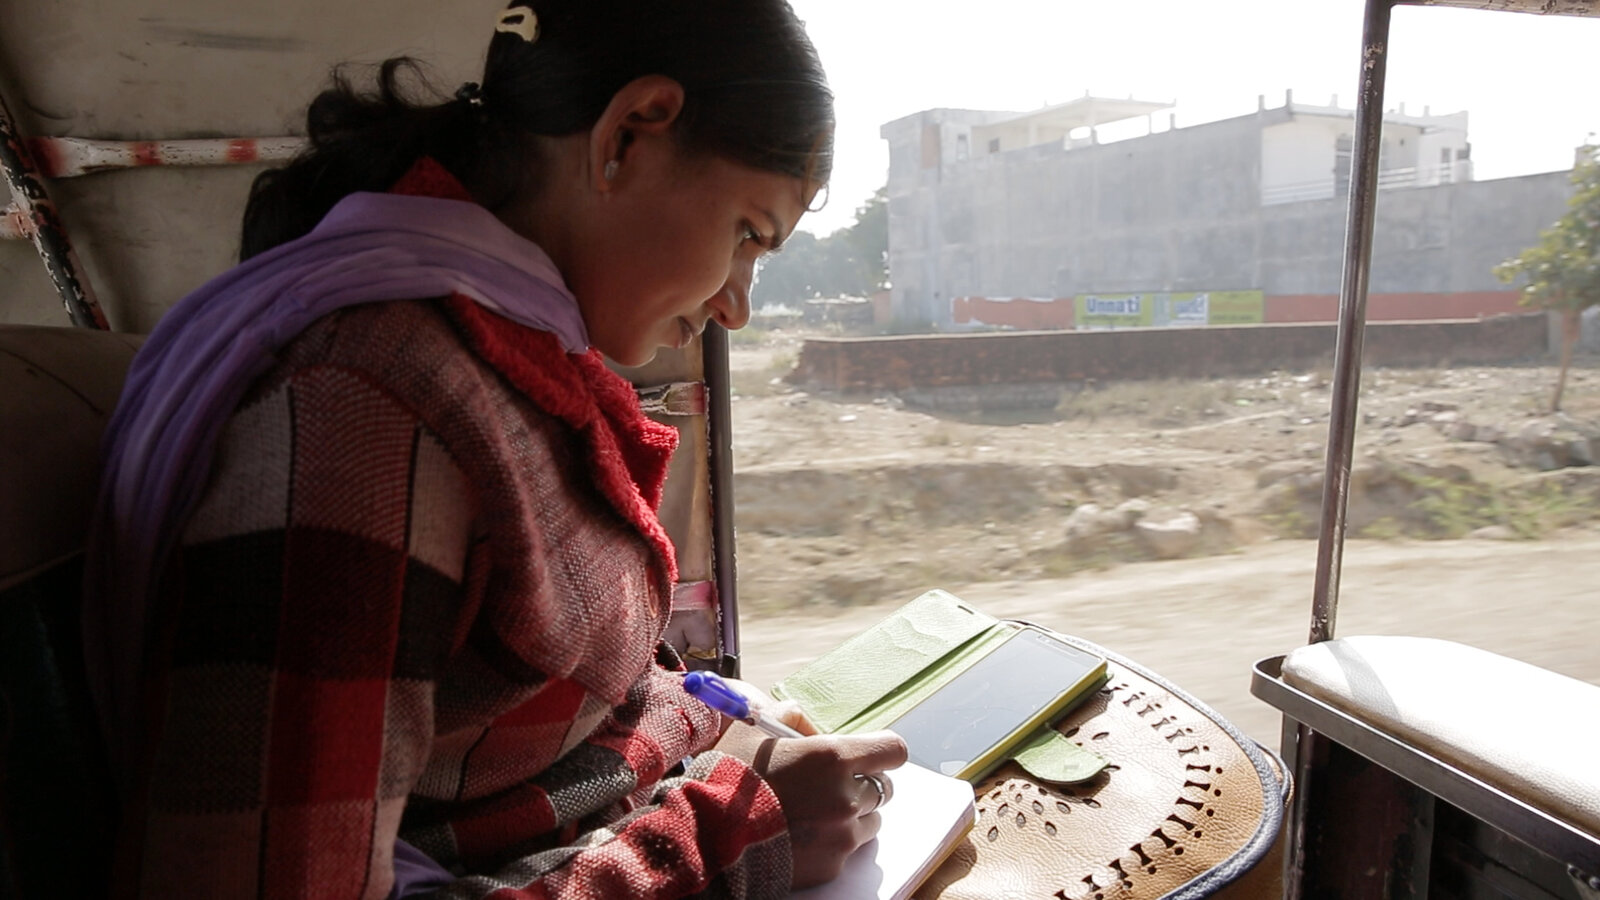 Cena do documentário Escrevendo com Fogo. A cena mostra uma mulher debruçada sobre um caderno, olhando a tela de um celular e anotando algo no papel.